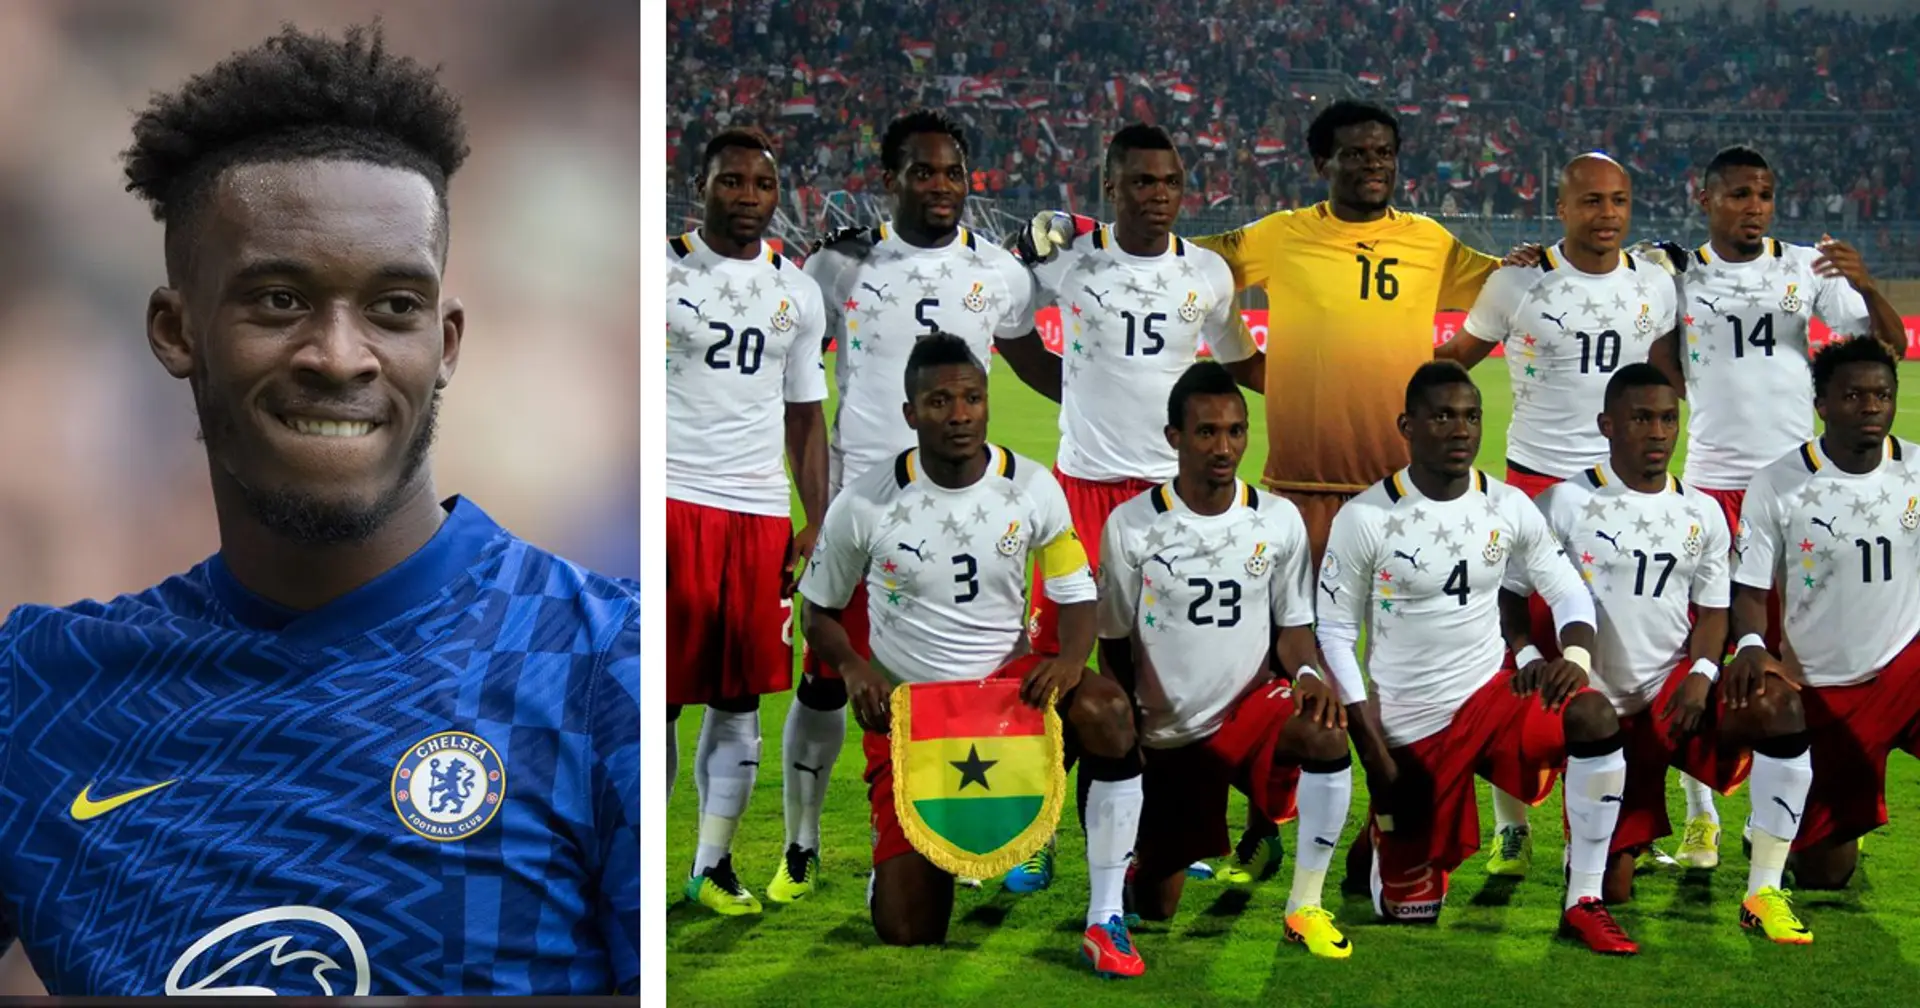 Chelsea-Star Hudson-Odoi wird zu ghanaischem Nationalteam wechseln, wenn Ghana sich für die WM qualifiziert - Medien